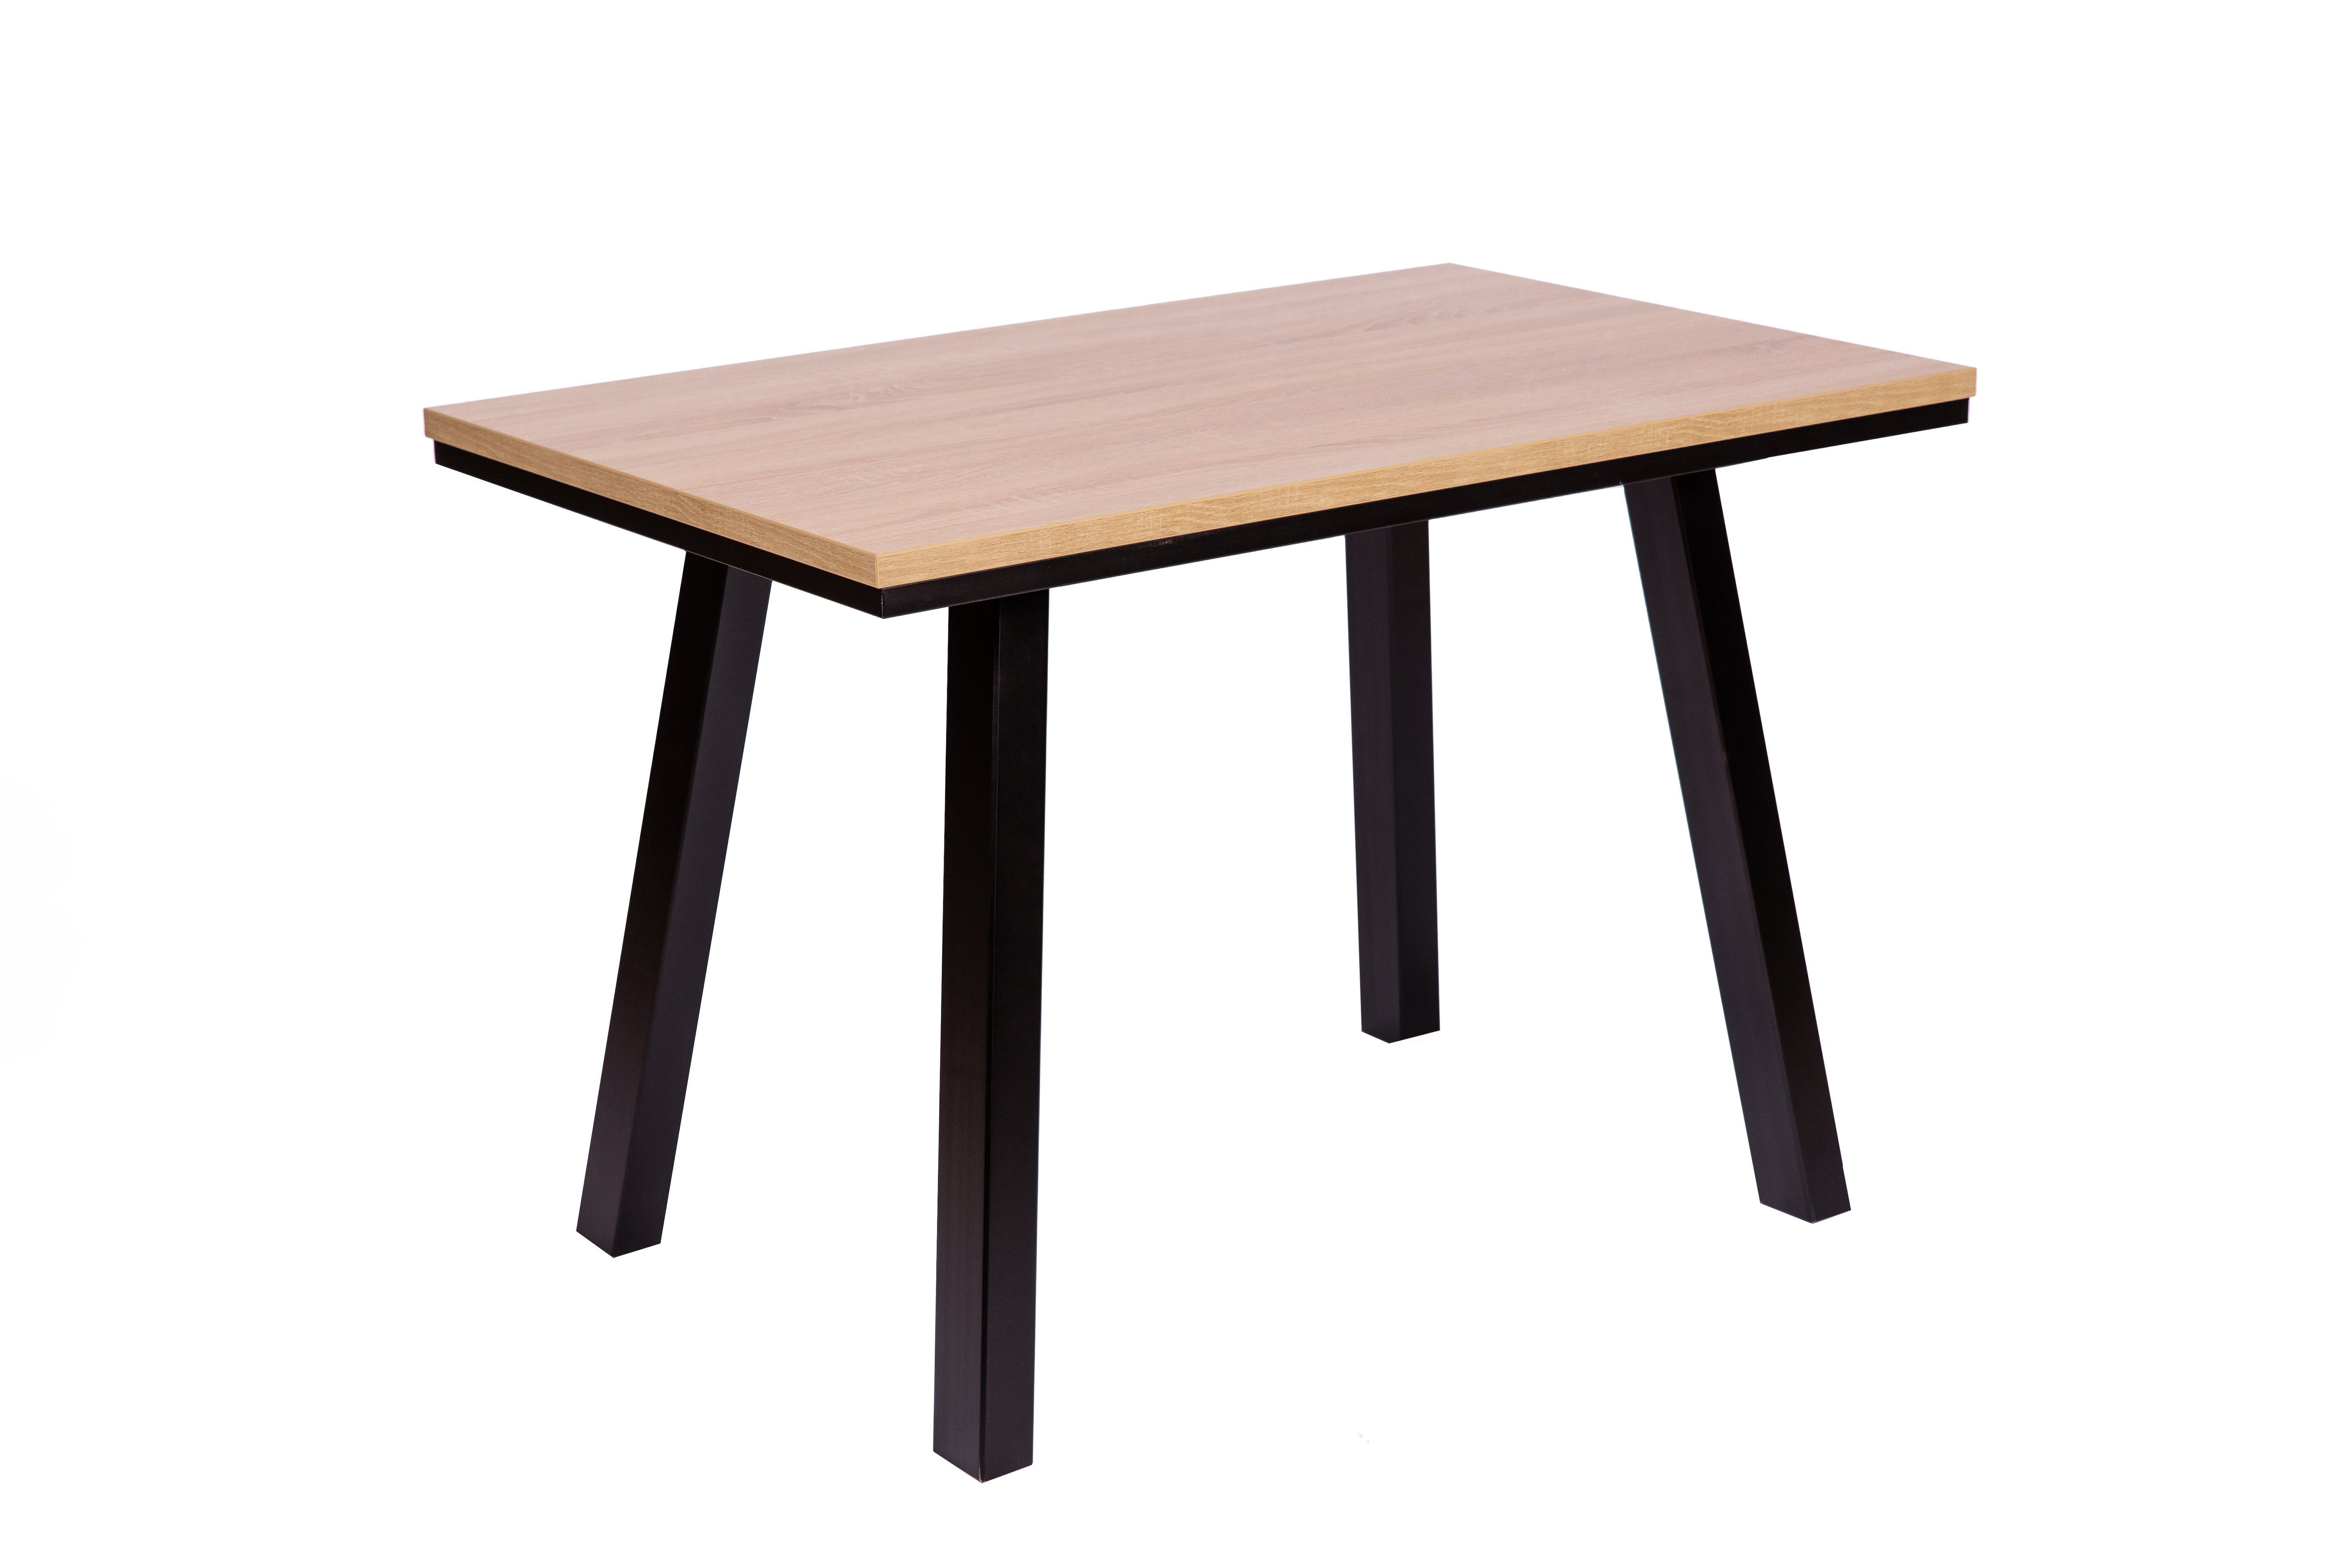 lackiert massiv Esstisch Tischfüße 110x70cm, schwarz Elegante' kundler home 'Der